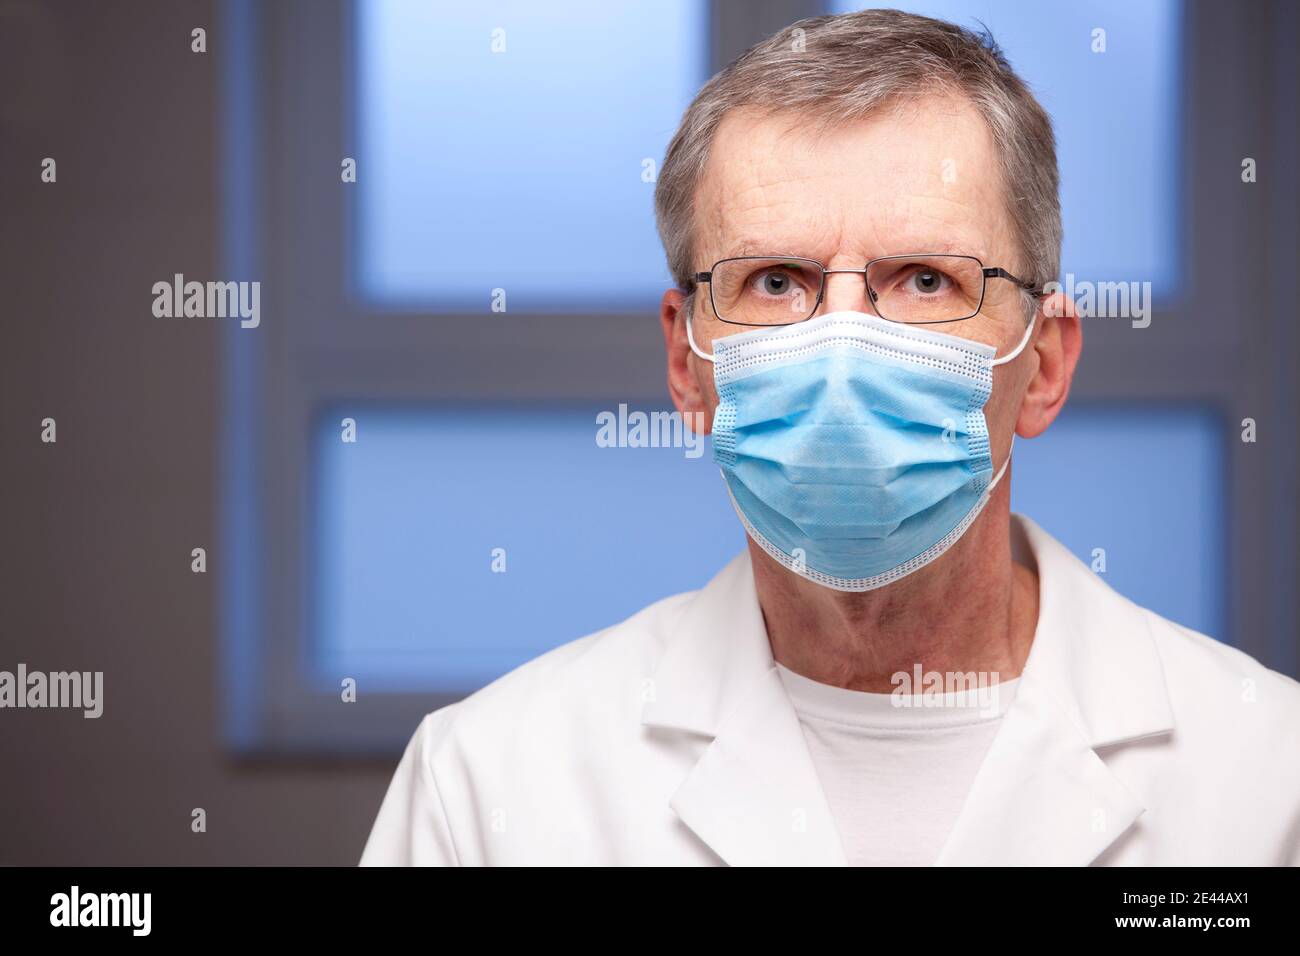 Portrait eines reifen Arztes mit OP-Maske und weißer Kleidung Blick auf die Kamera - Fokus auf die Augen Stockfoto